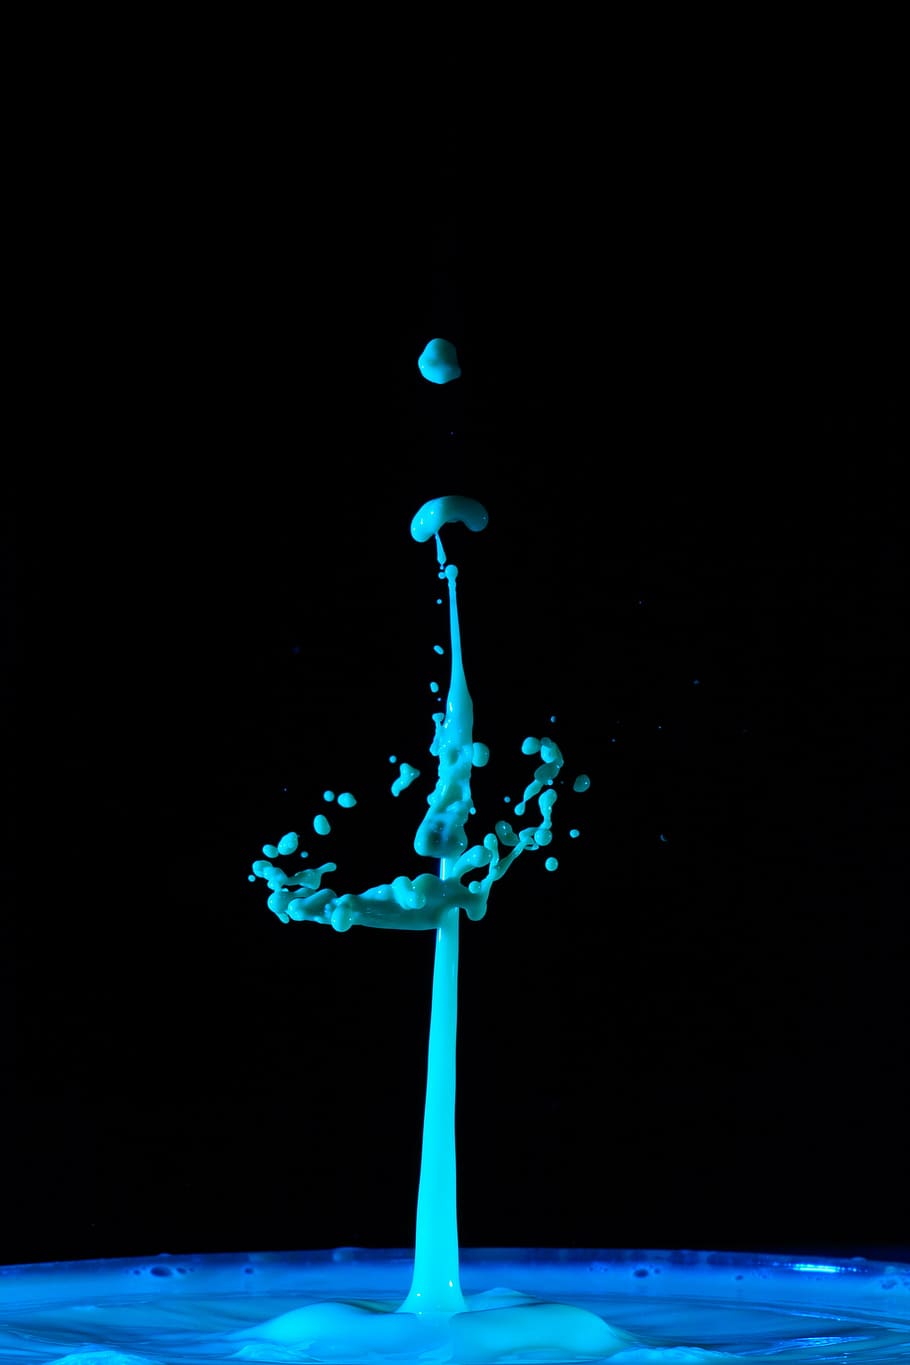 gotejamento, água, gota de água, característica da água, azul, spray, injetar, líquido, tiro do estúdio, fundo preto